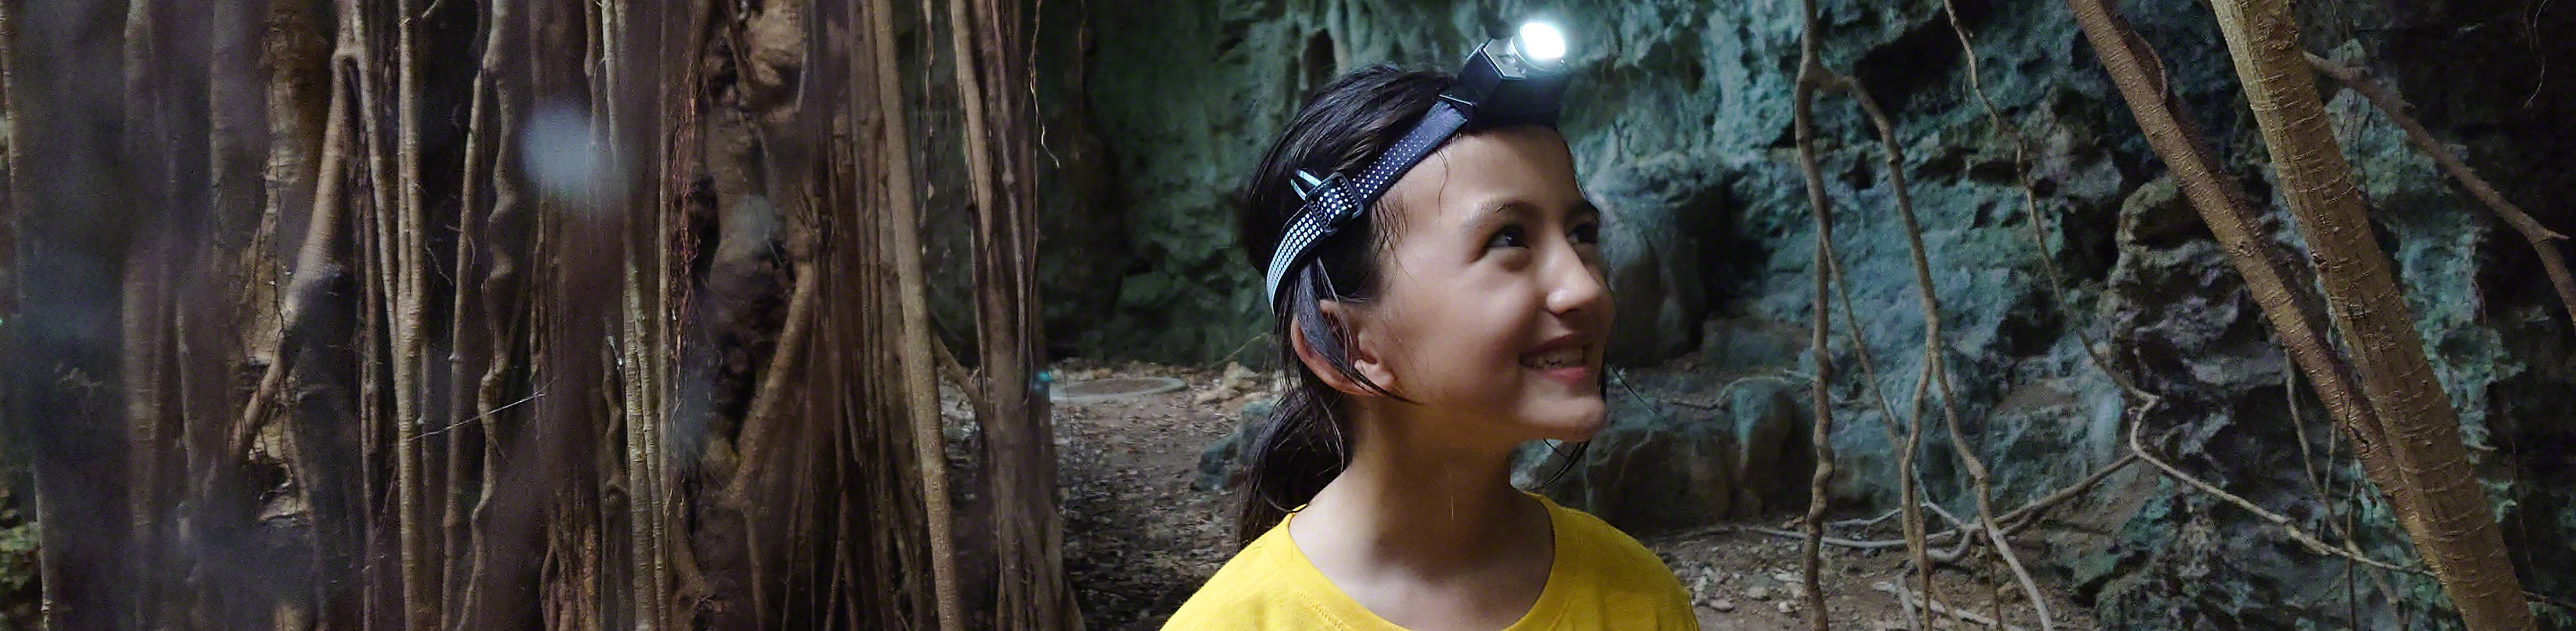 Dívka ve žlutém tričku s čelovkou se prochází mezi stromy a skalní stěnou